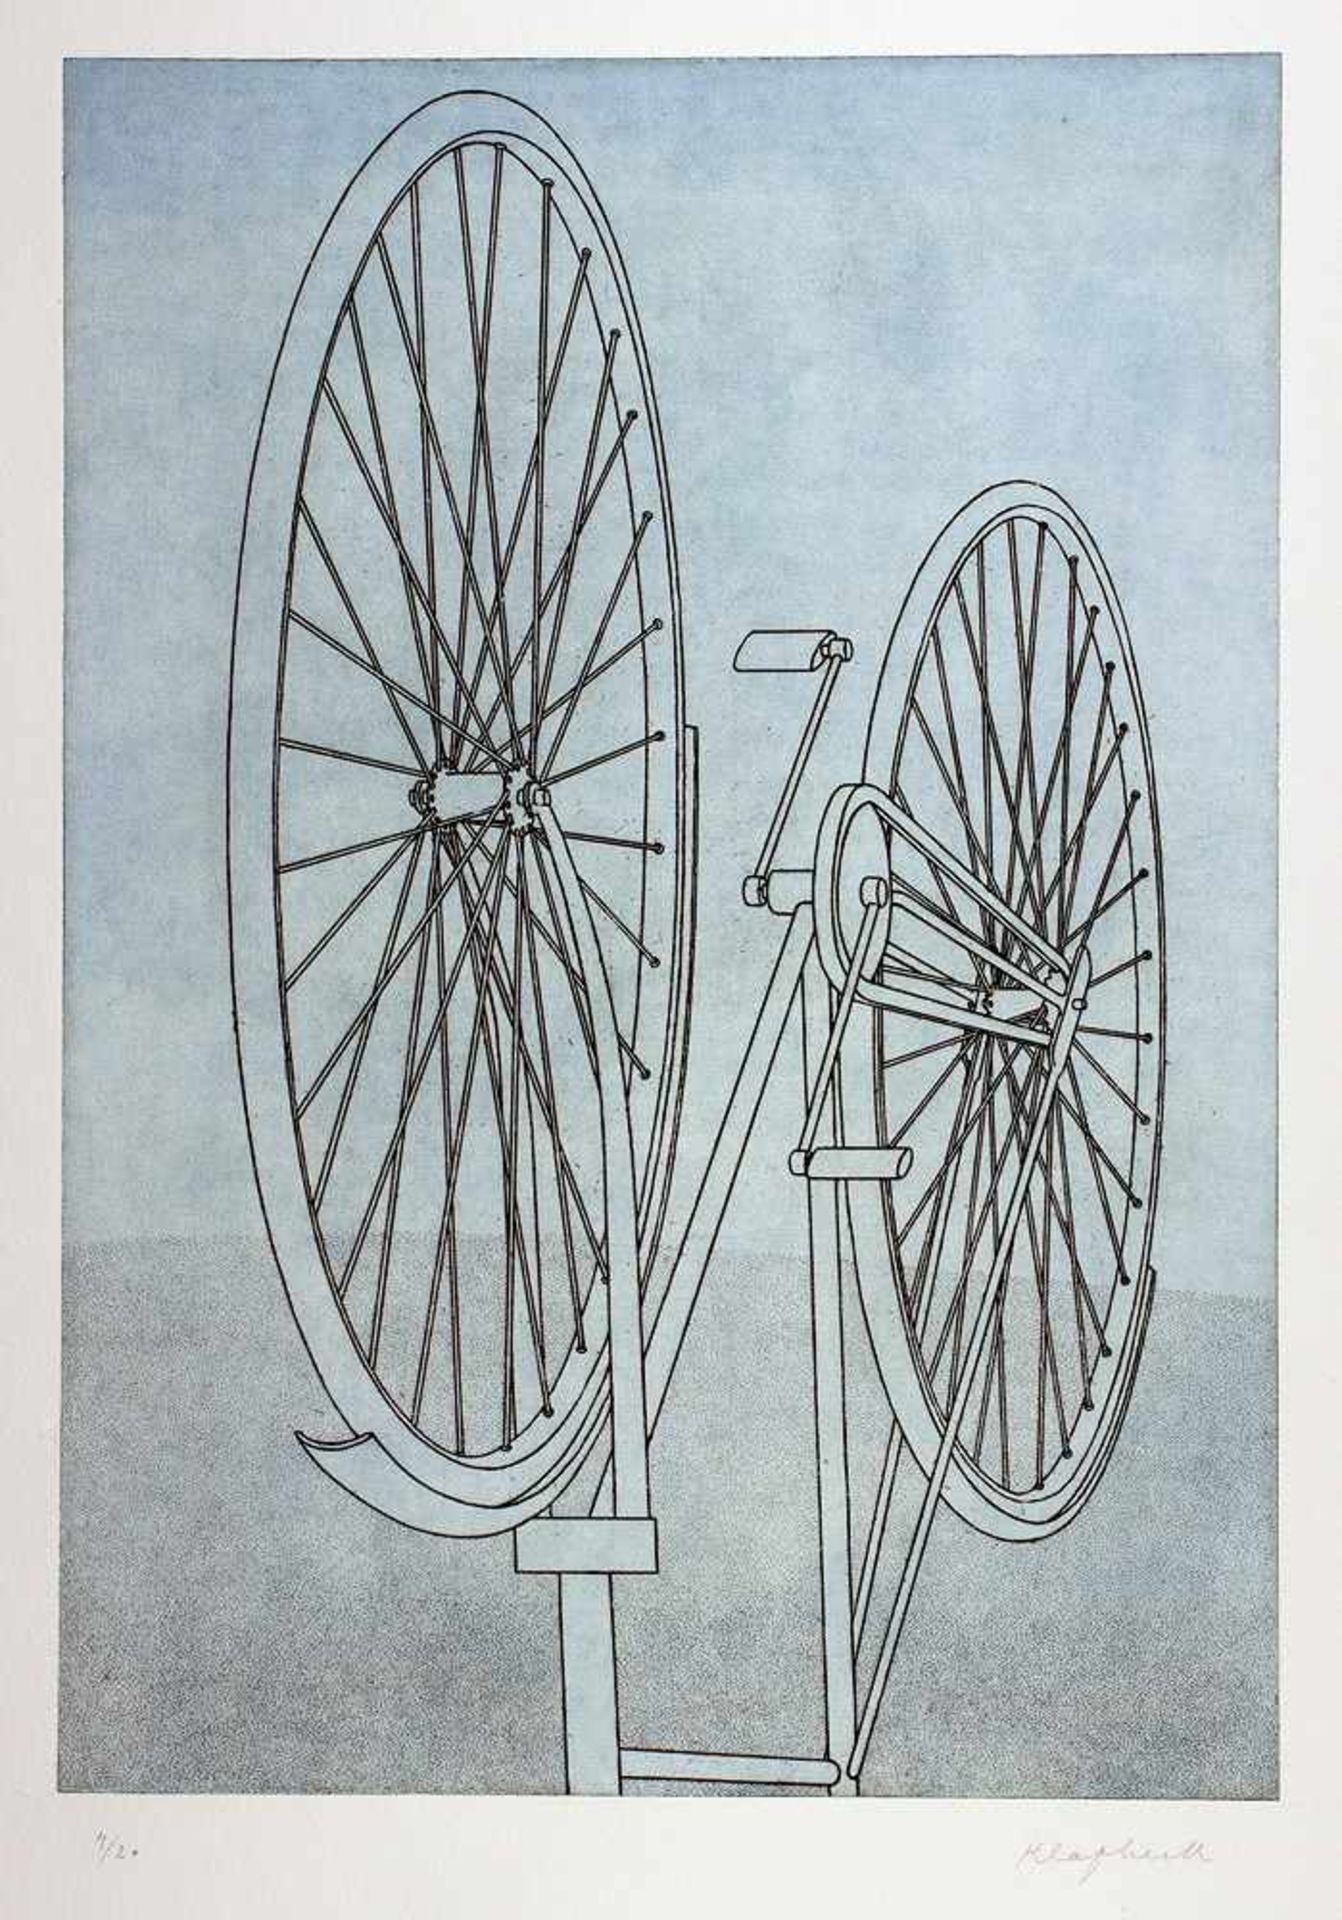 Konrad Klapheck. Fahrrad I. Farbige Radierung. 1979/80. 46,8 : 32,8 cm (79 : 56 cm). Signiert und